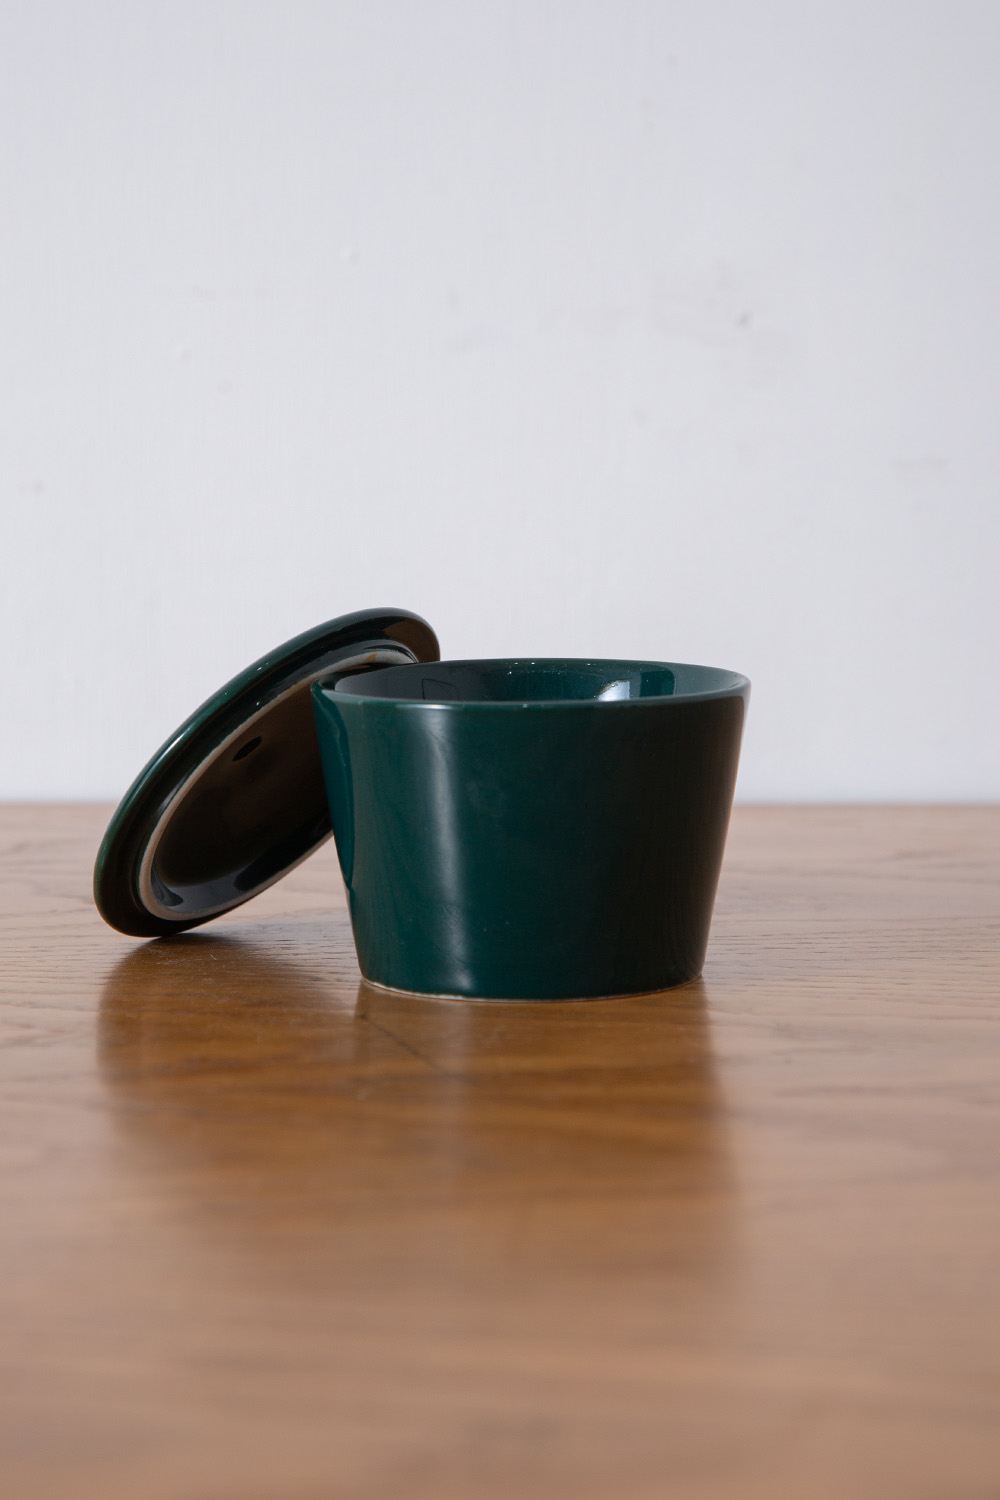 stoop | Suger Pot “KILTA” for ARABIA by Kaj Franck in Green